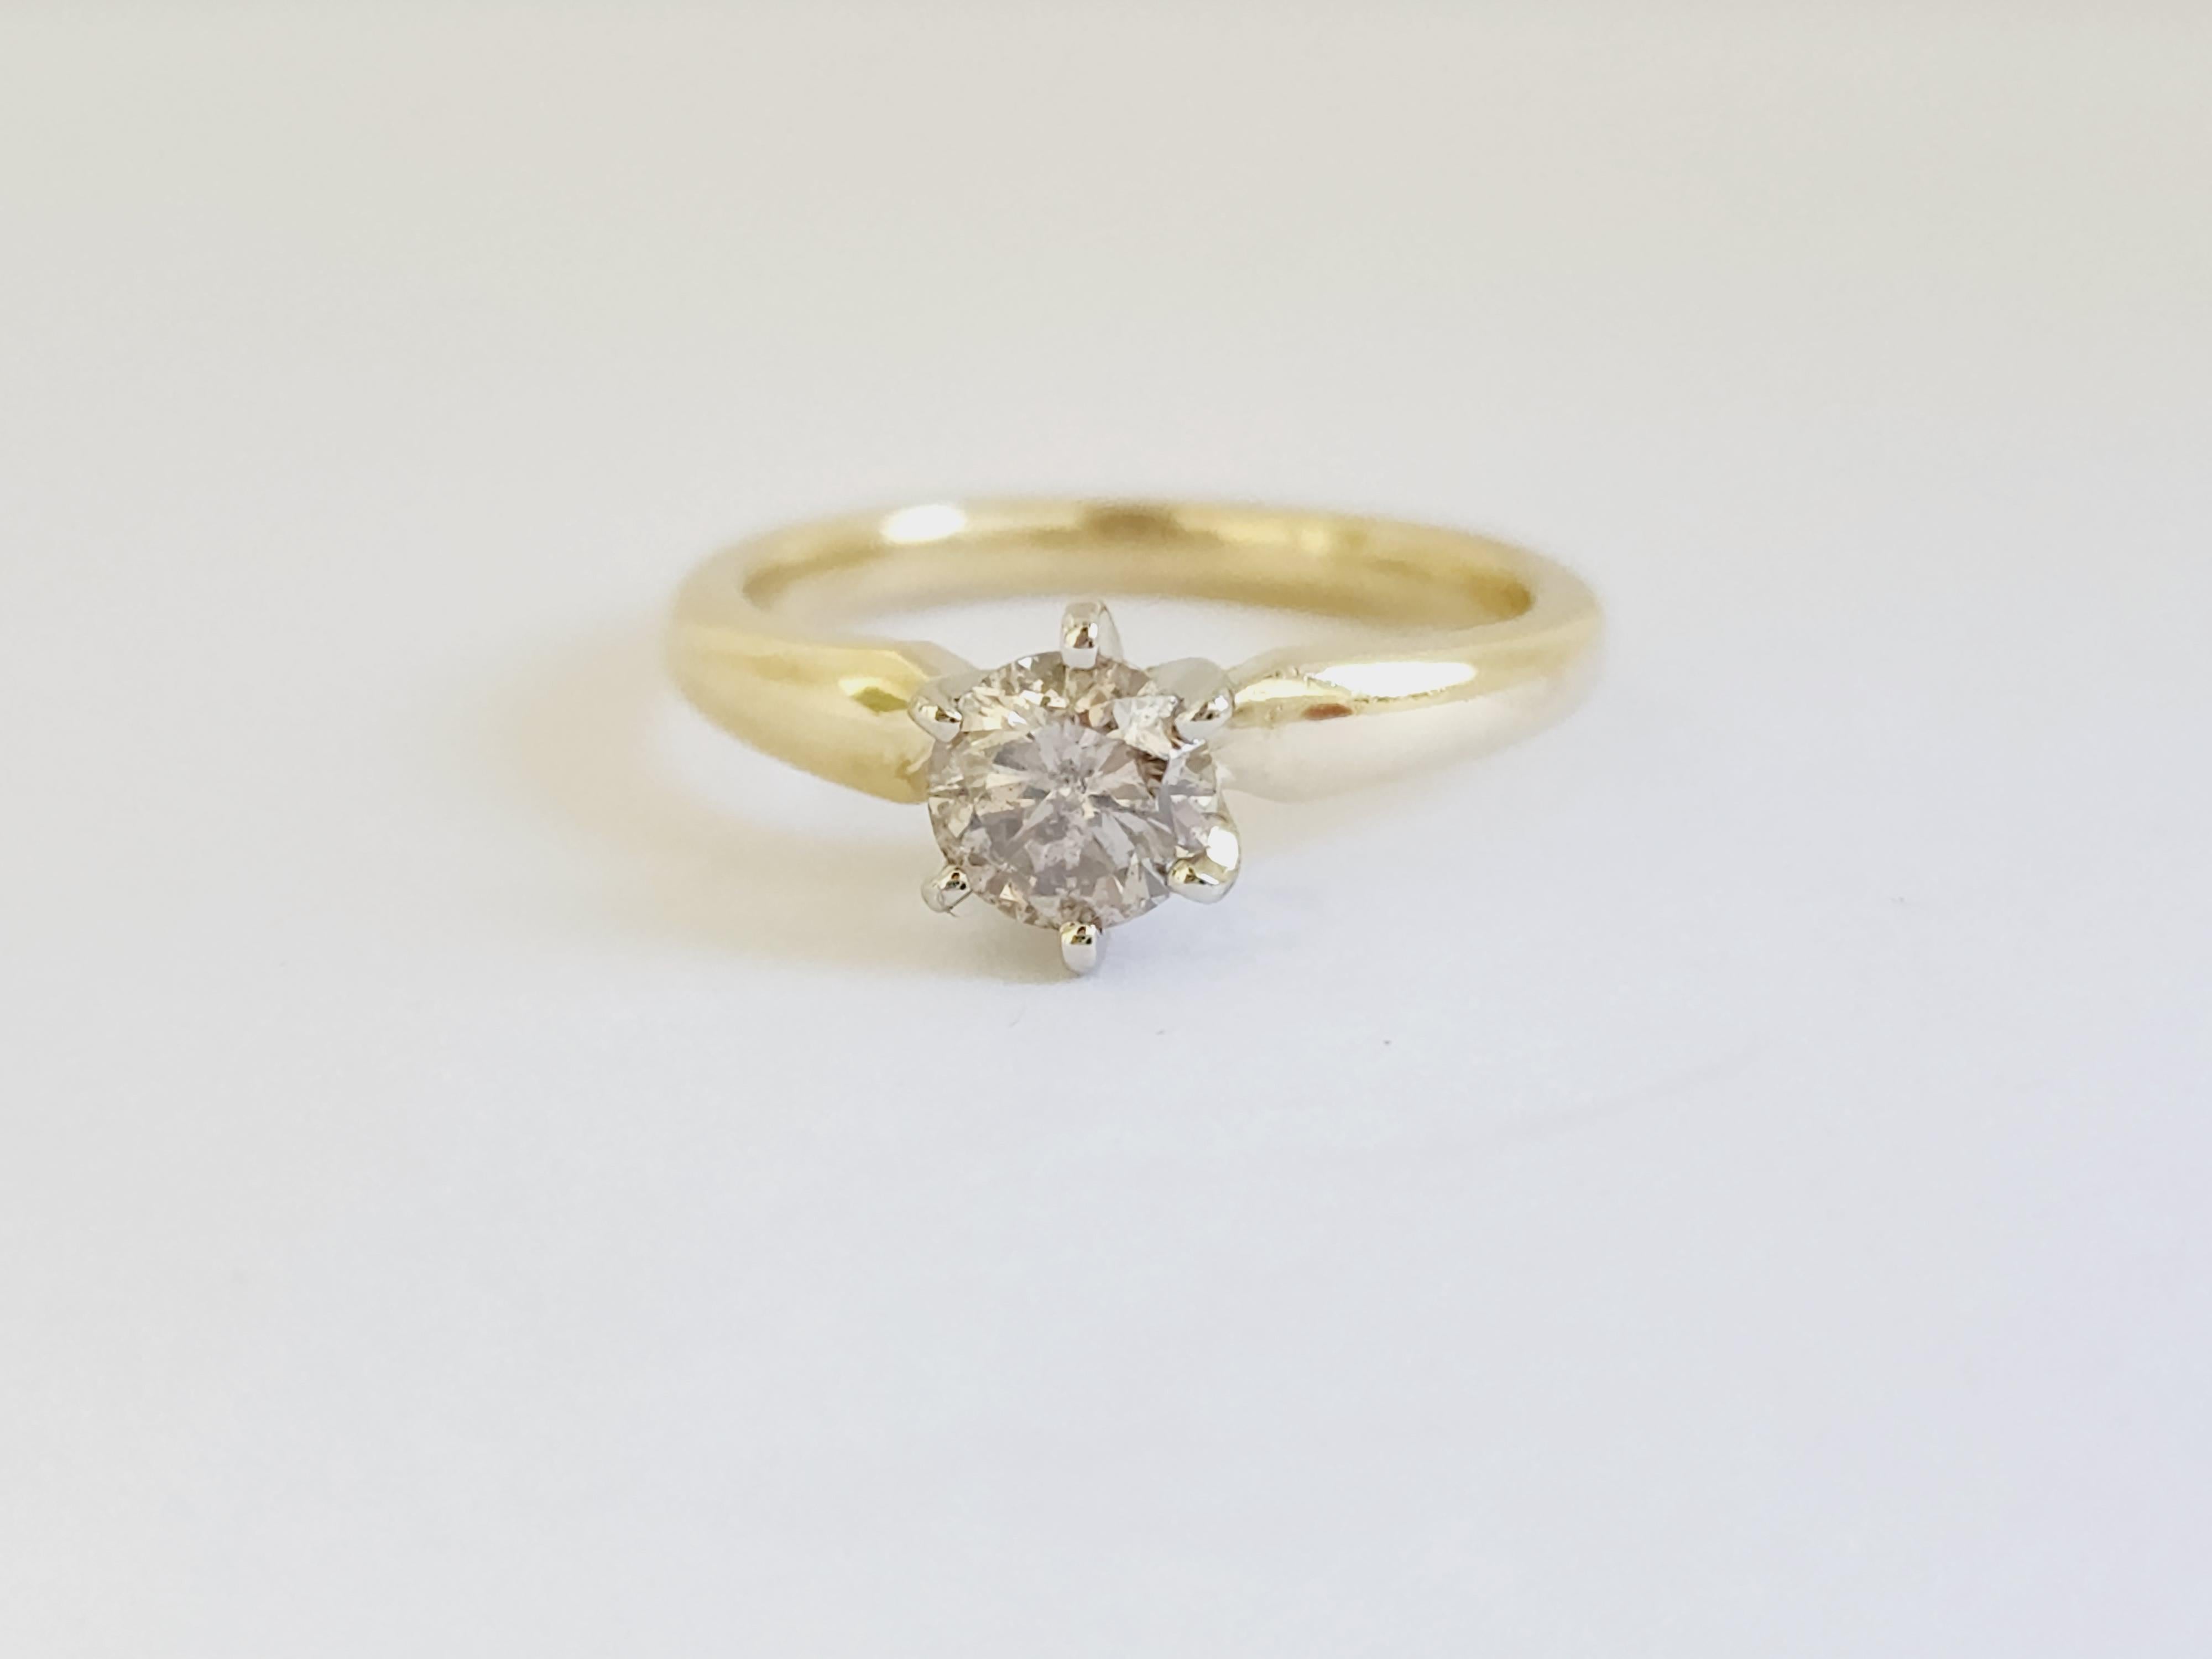 Natürlicher hellbrauner runder Diamant mit einem Gewicht von 0,76 Karat. 
Auf 6 Zacken 14K Gelbgold gesetzt.
Ringgröße: 6.5